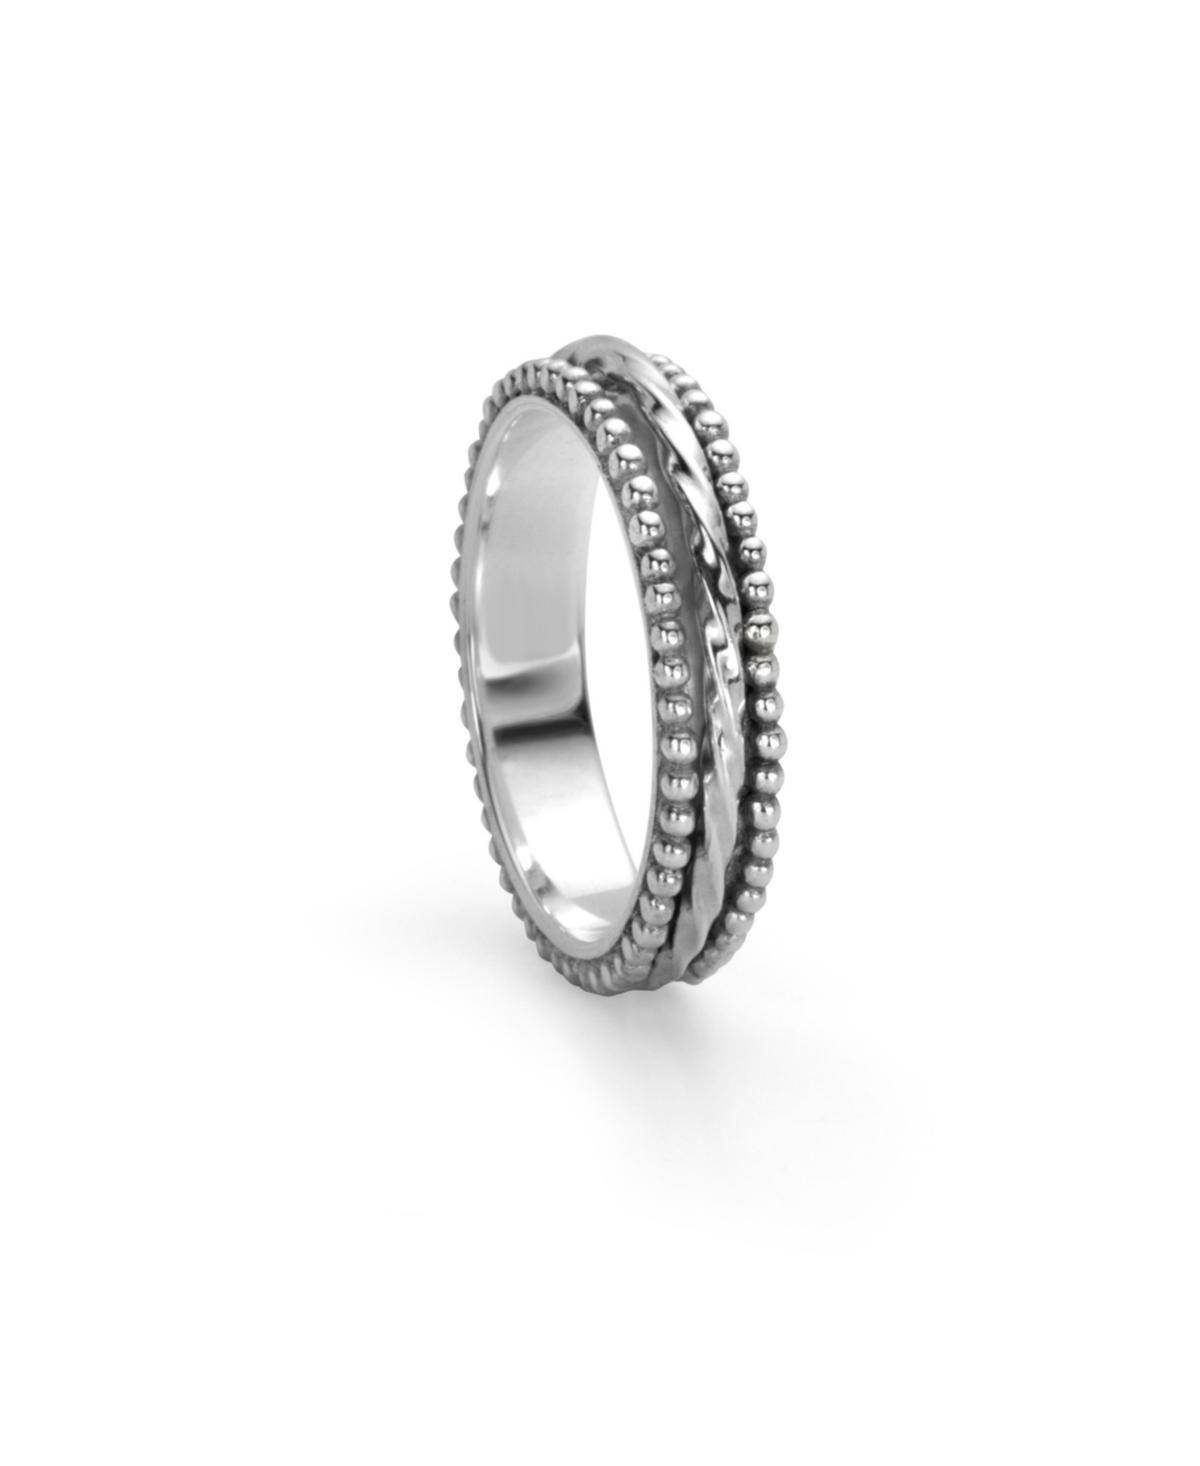 Chakra Ring - Silver